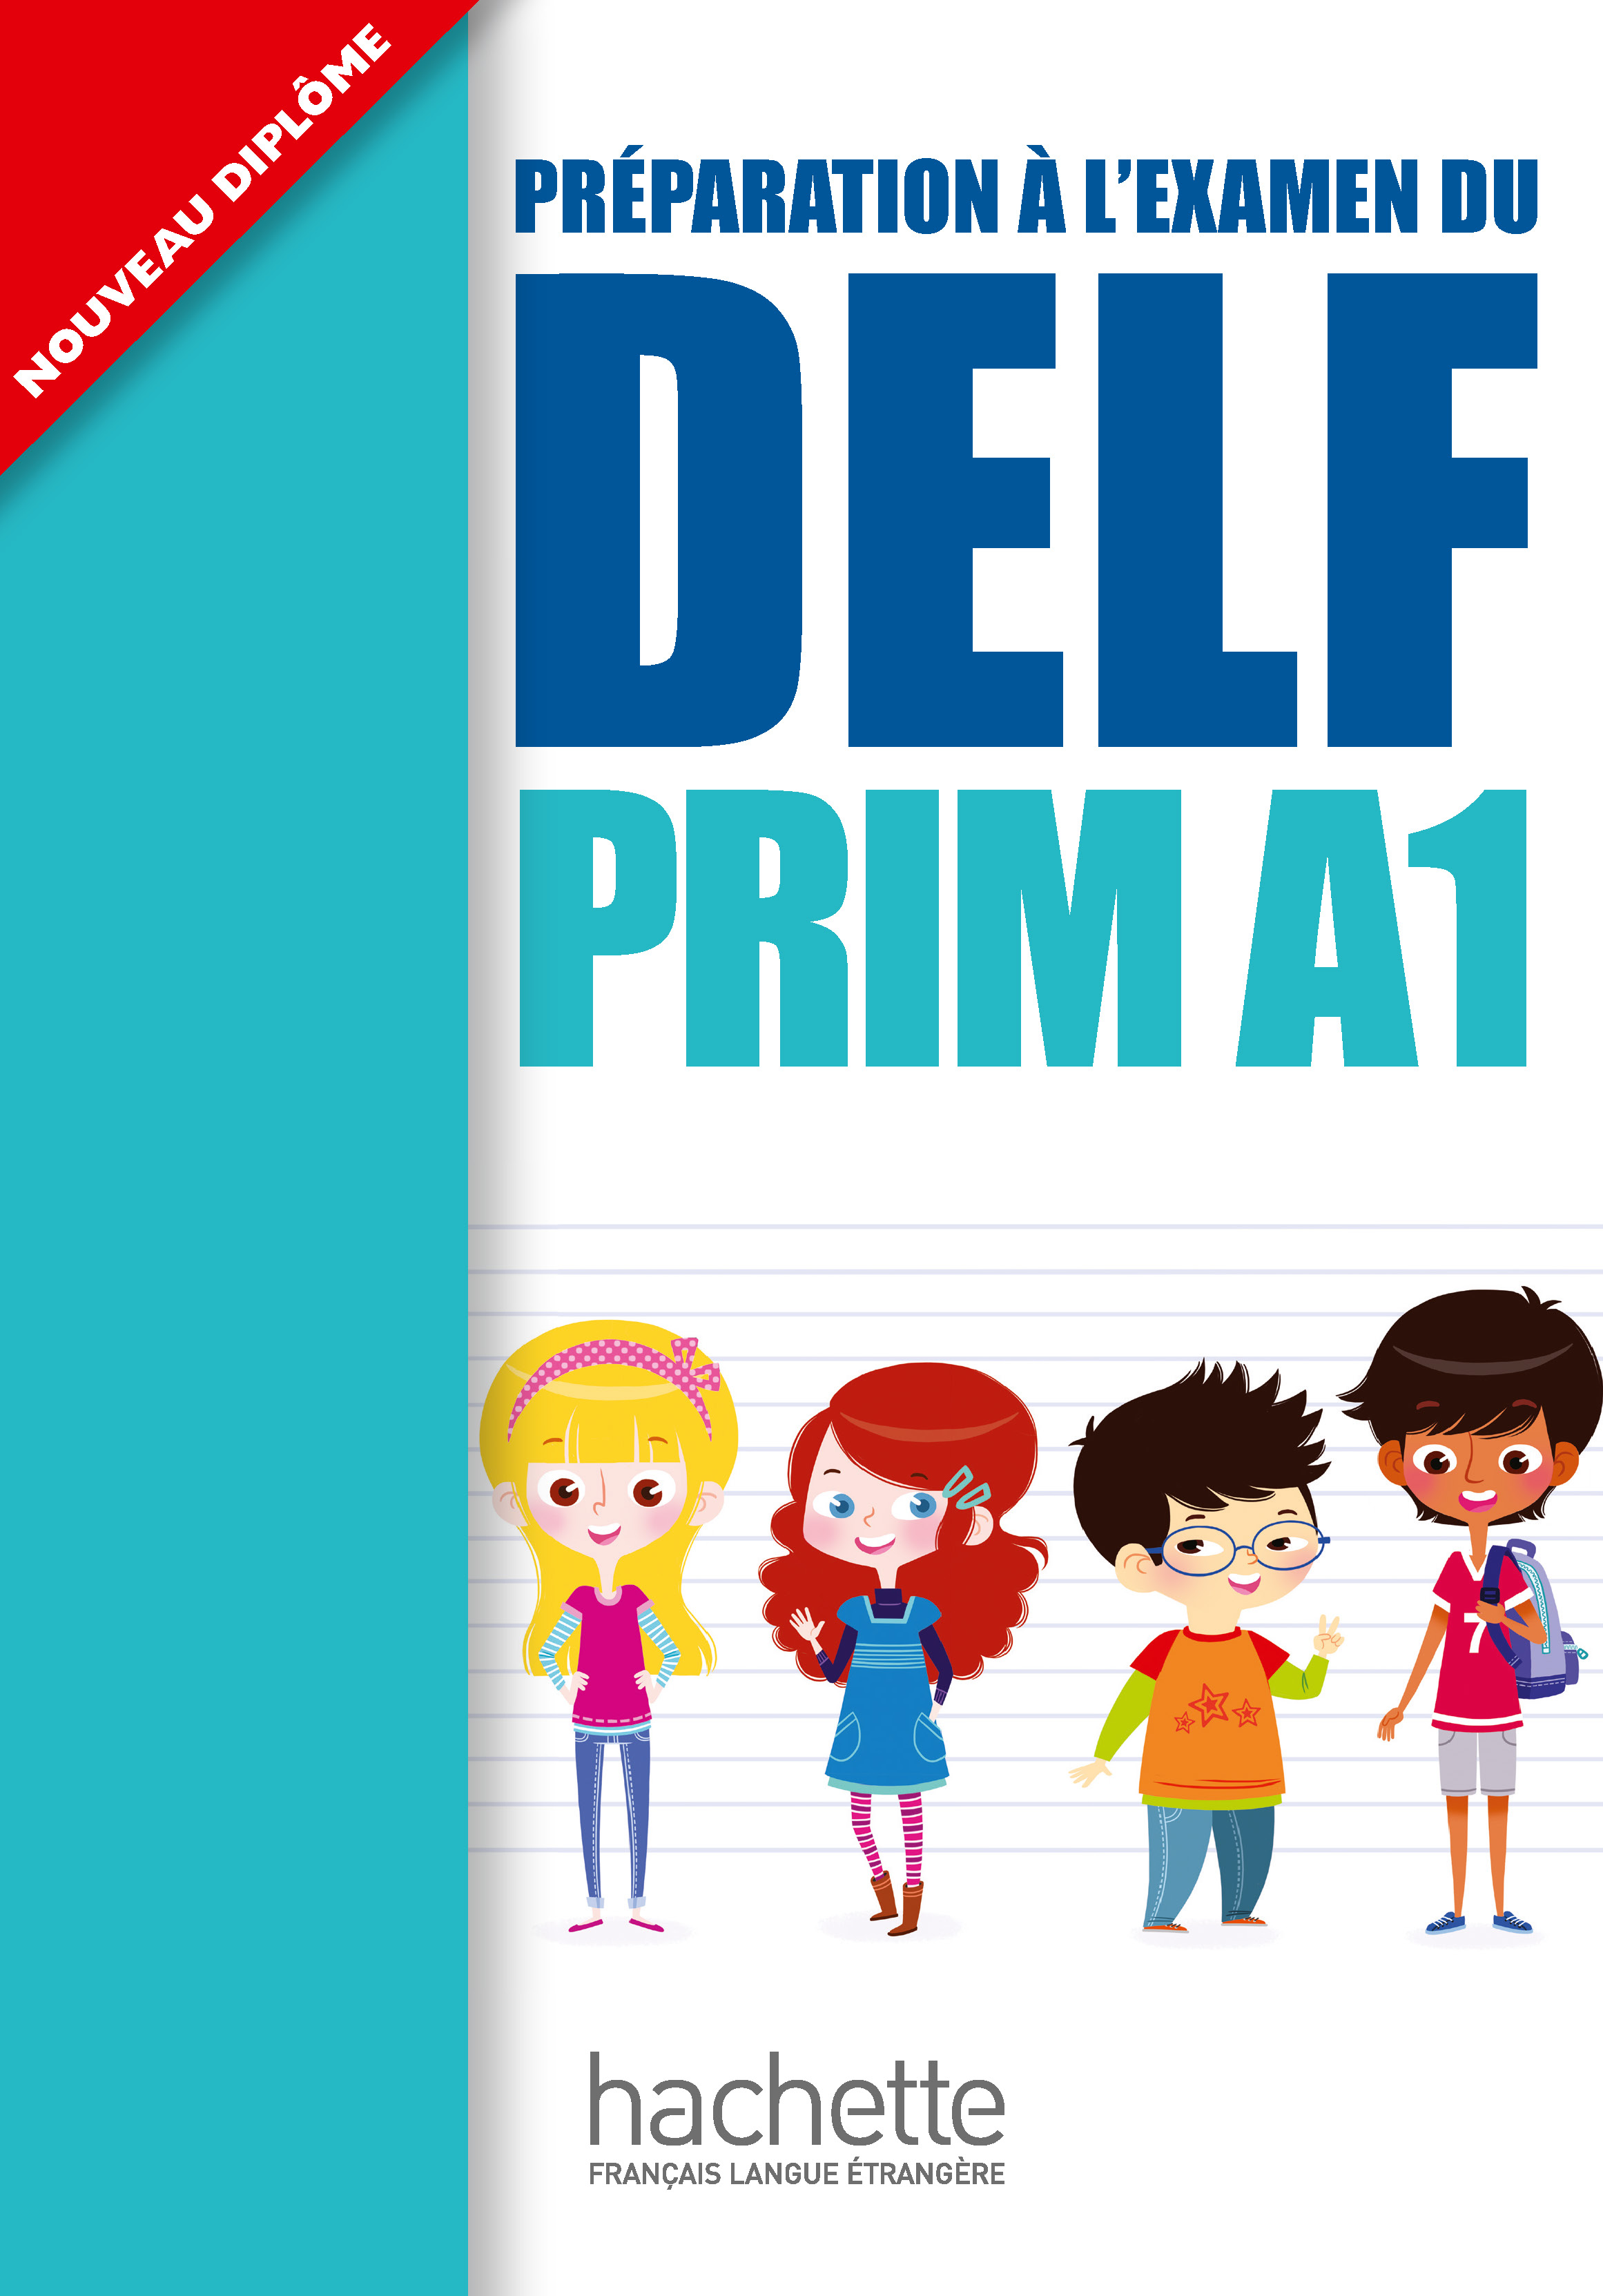 DELF Prim A1